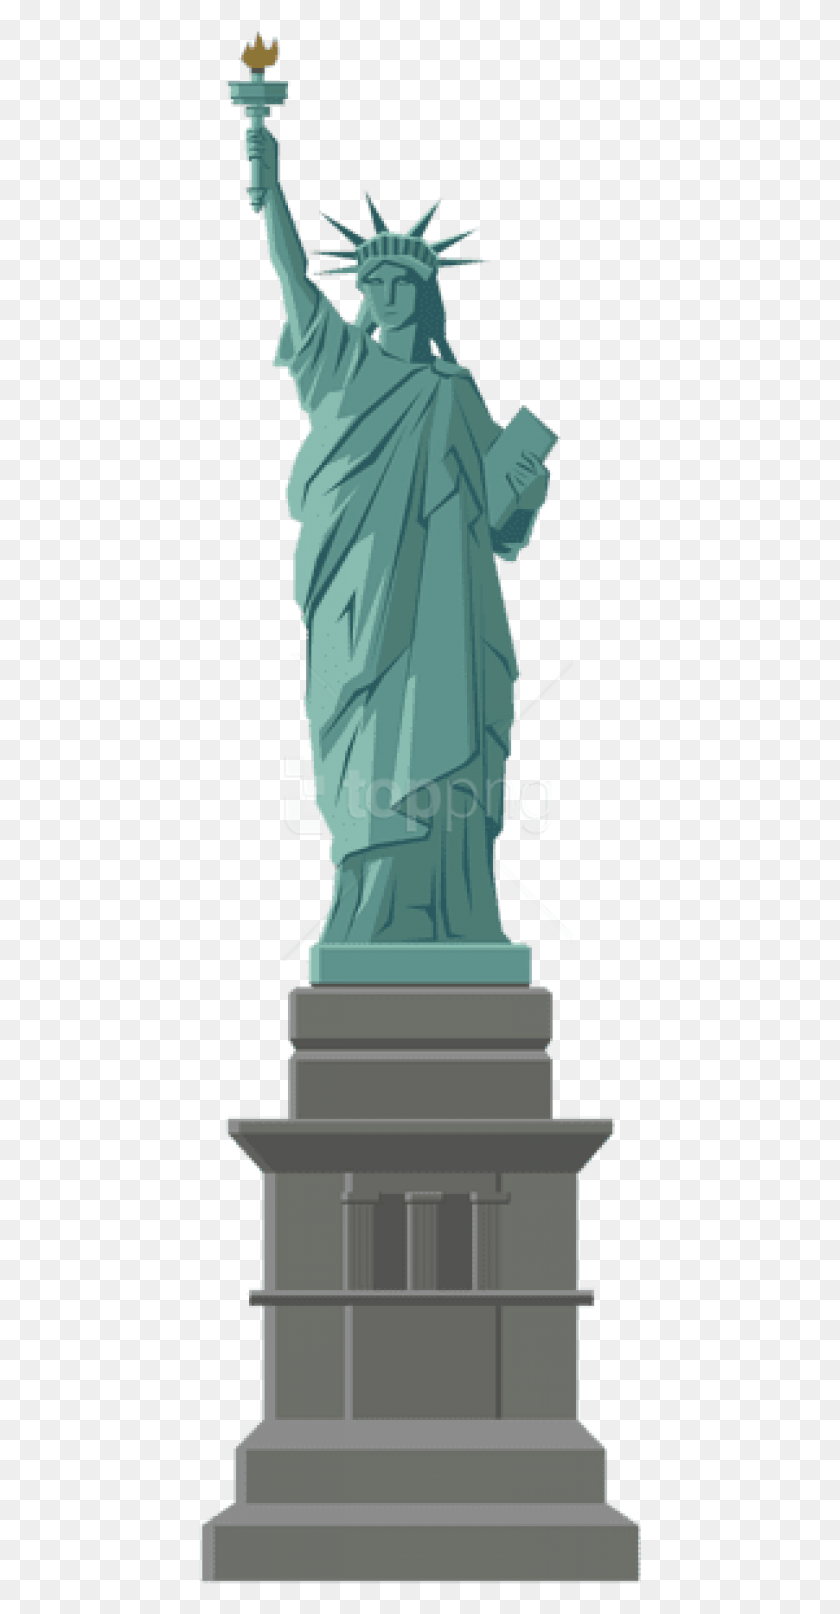 443x1554 Статуя Свободы Изображения Фон Статуя, Скульптура, Памятник Hd Png Скачать